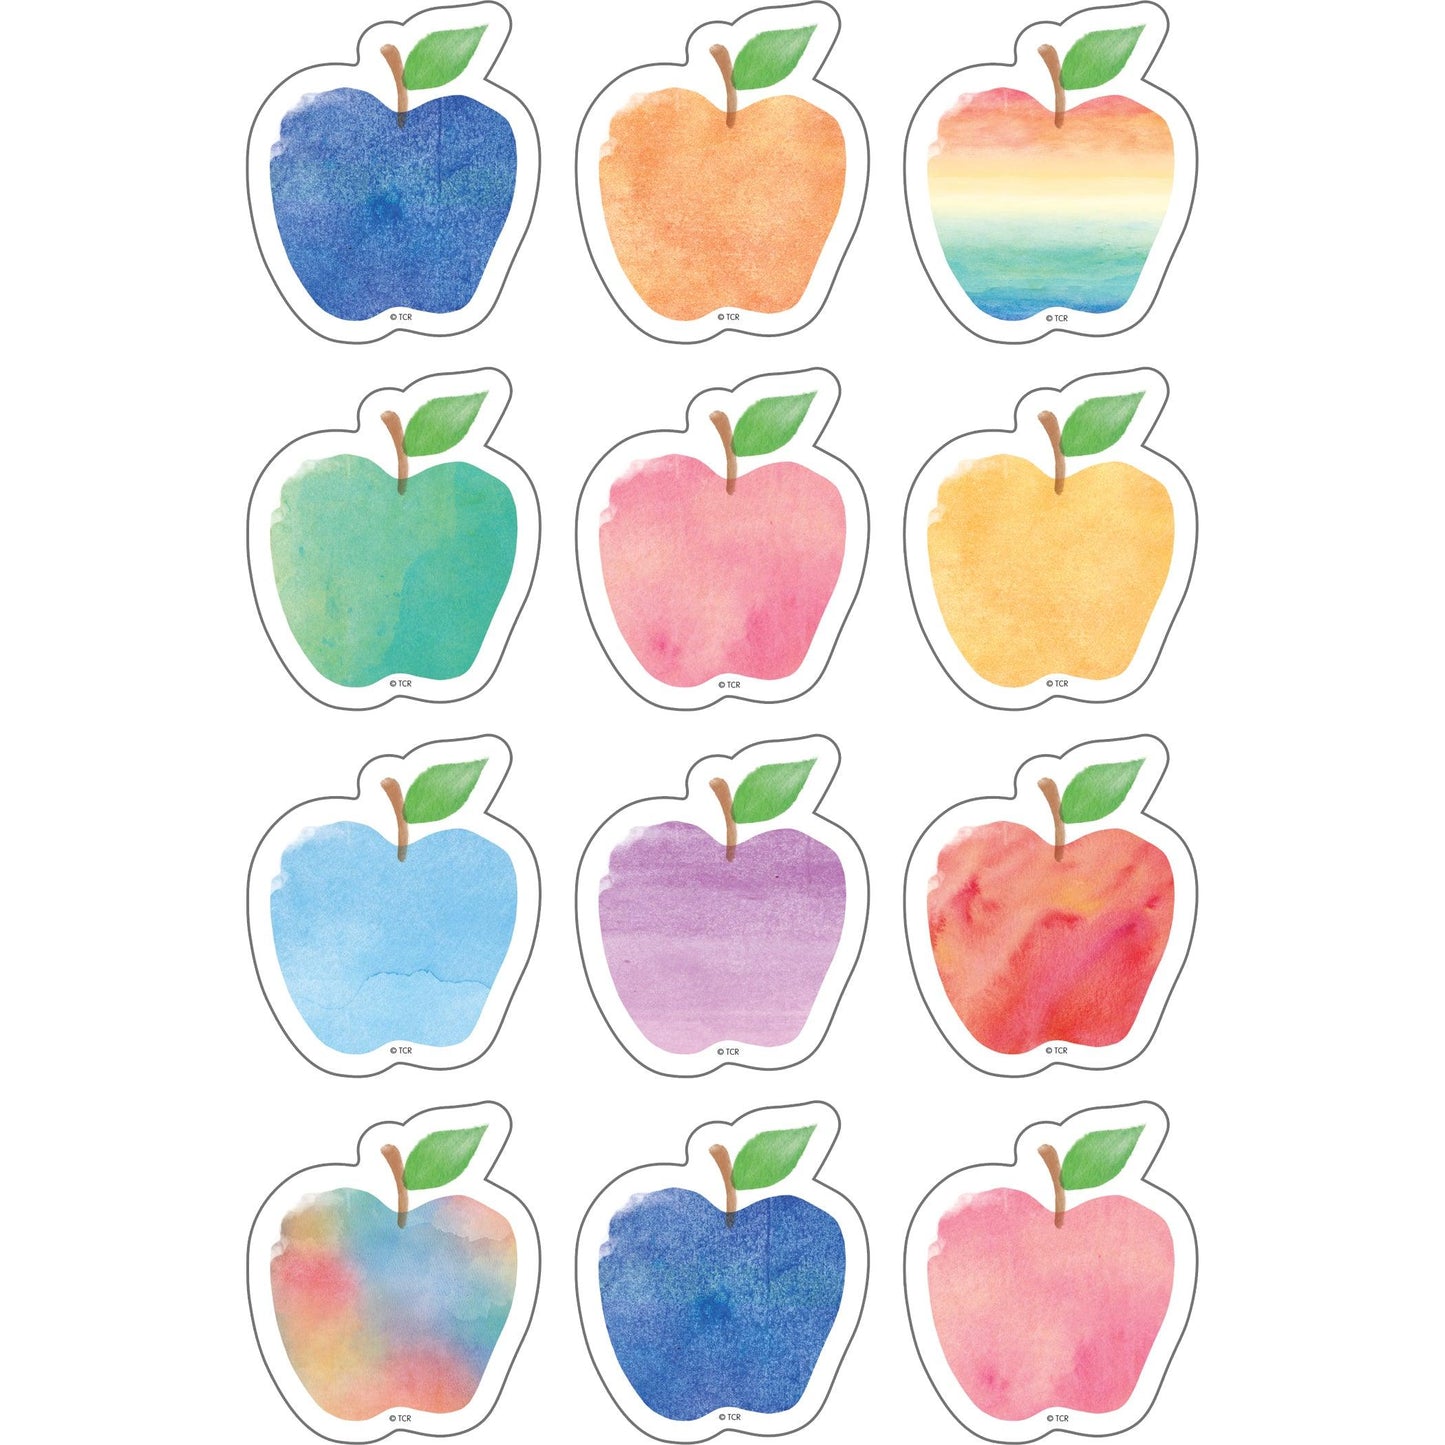 Watercolor Apples Mini Accents, 36 Per Pack, 6 Packs - Loomini